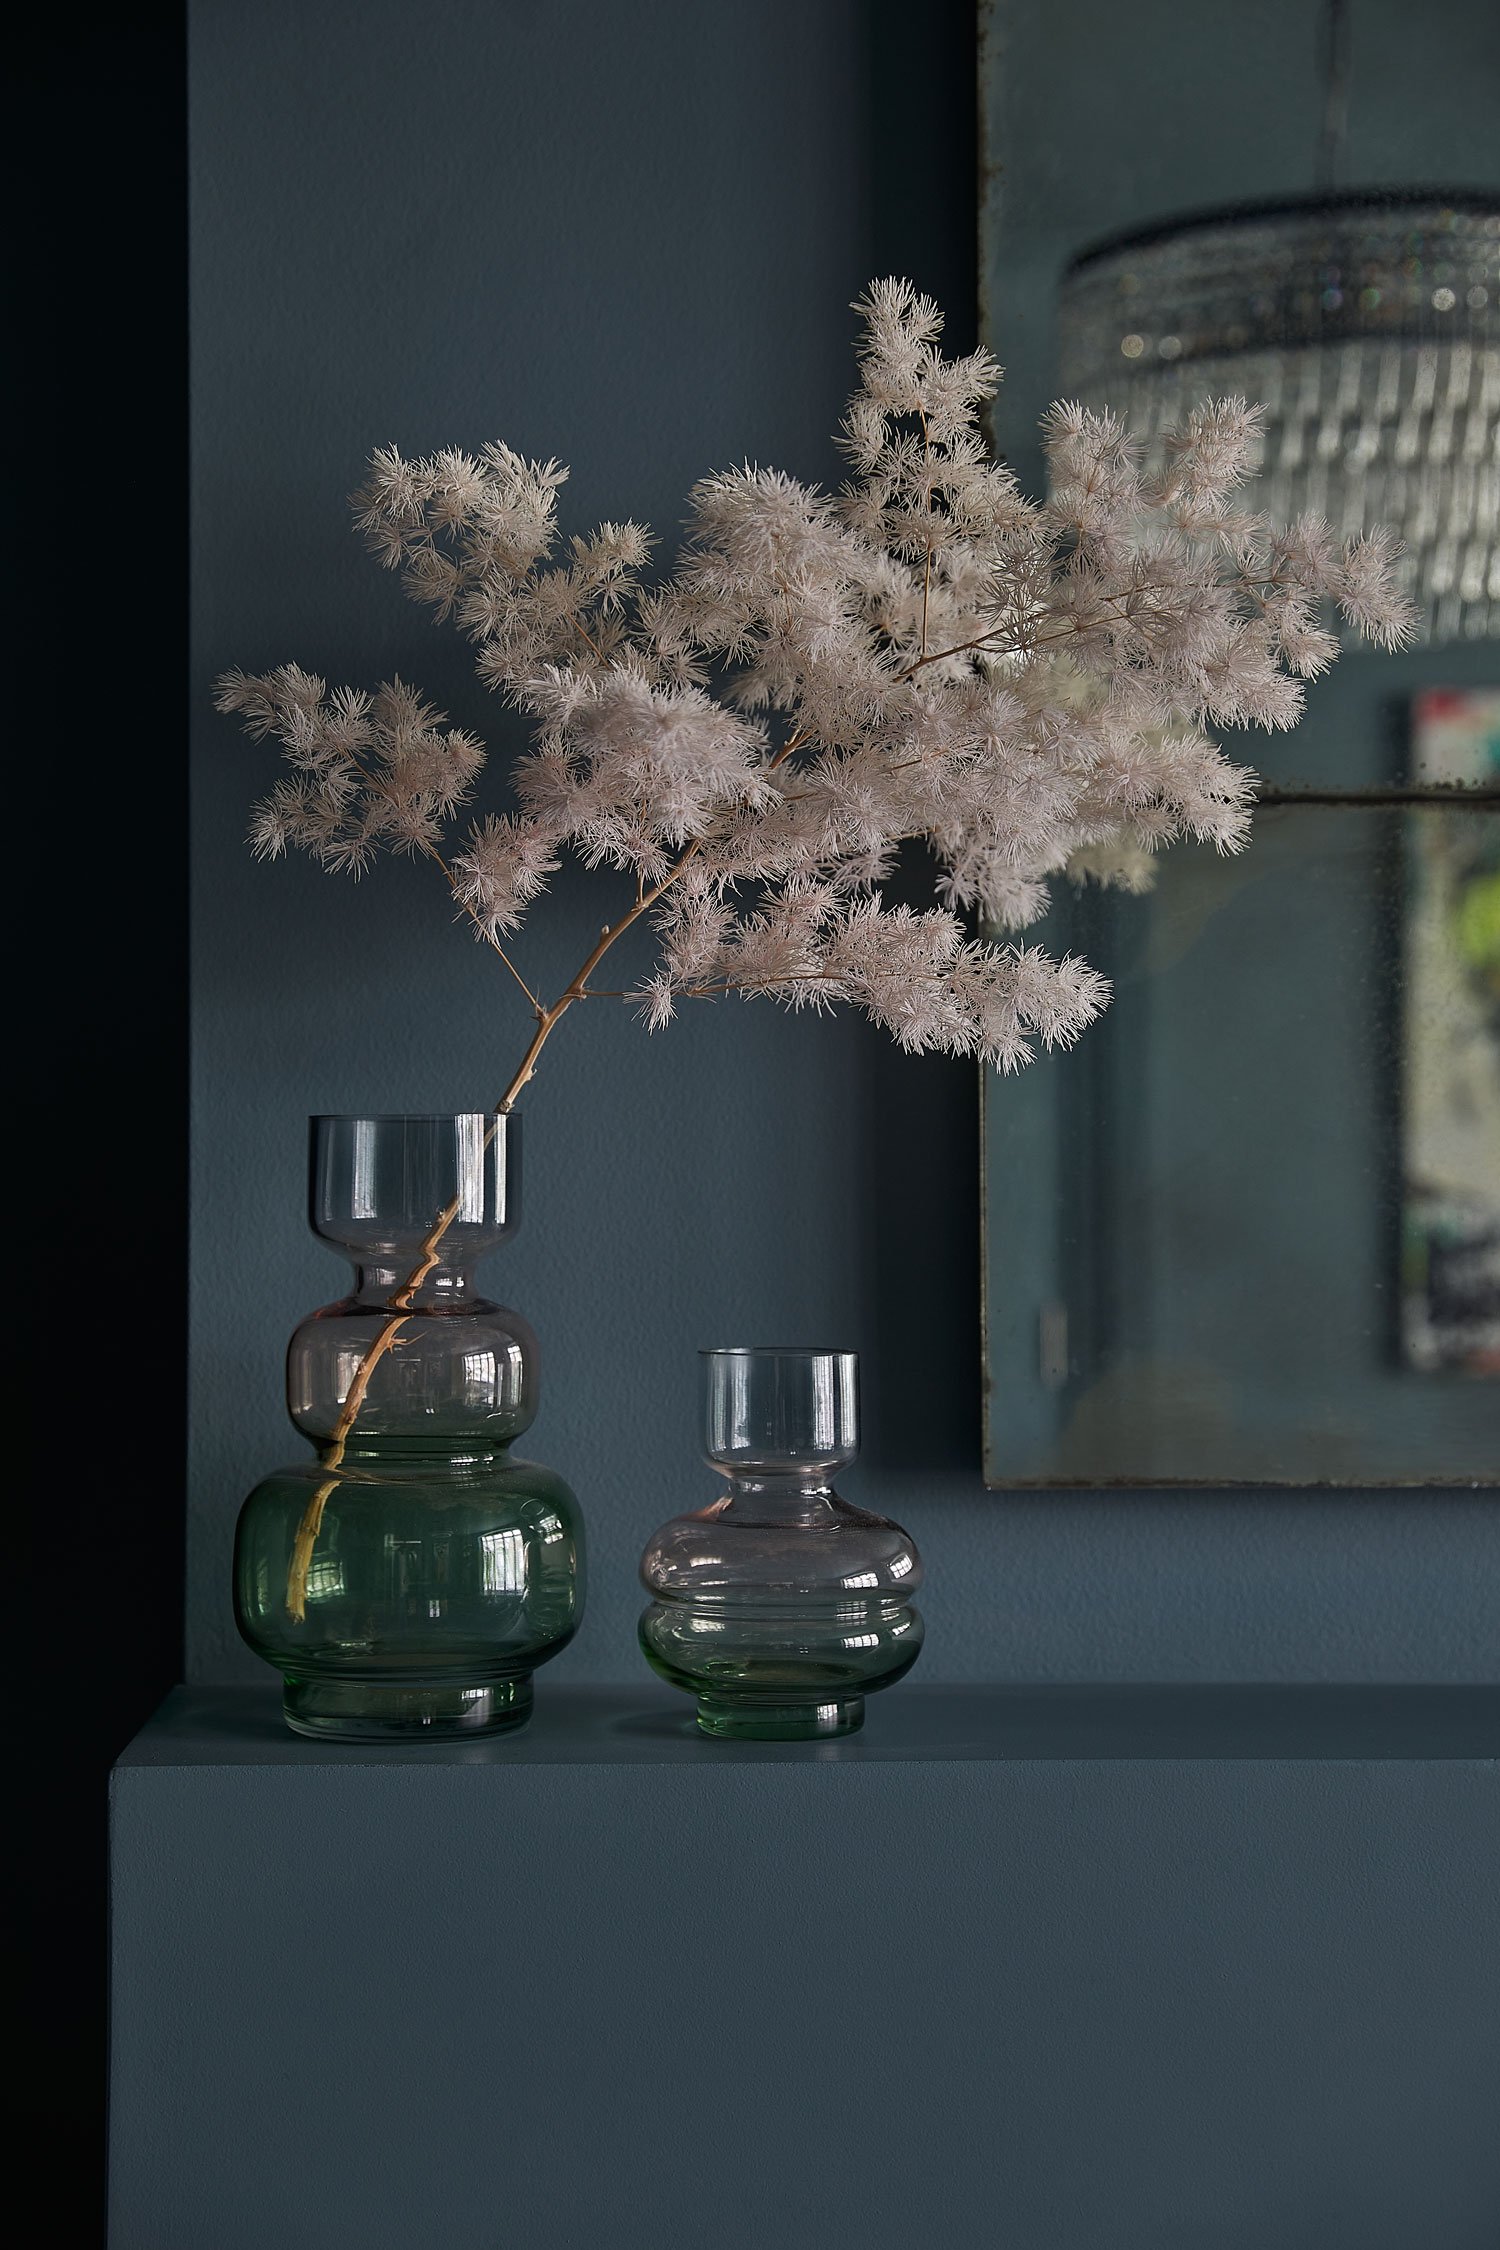 foliage-in-vase-against-grey-wall.jpg